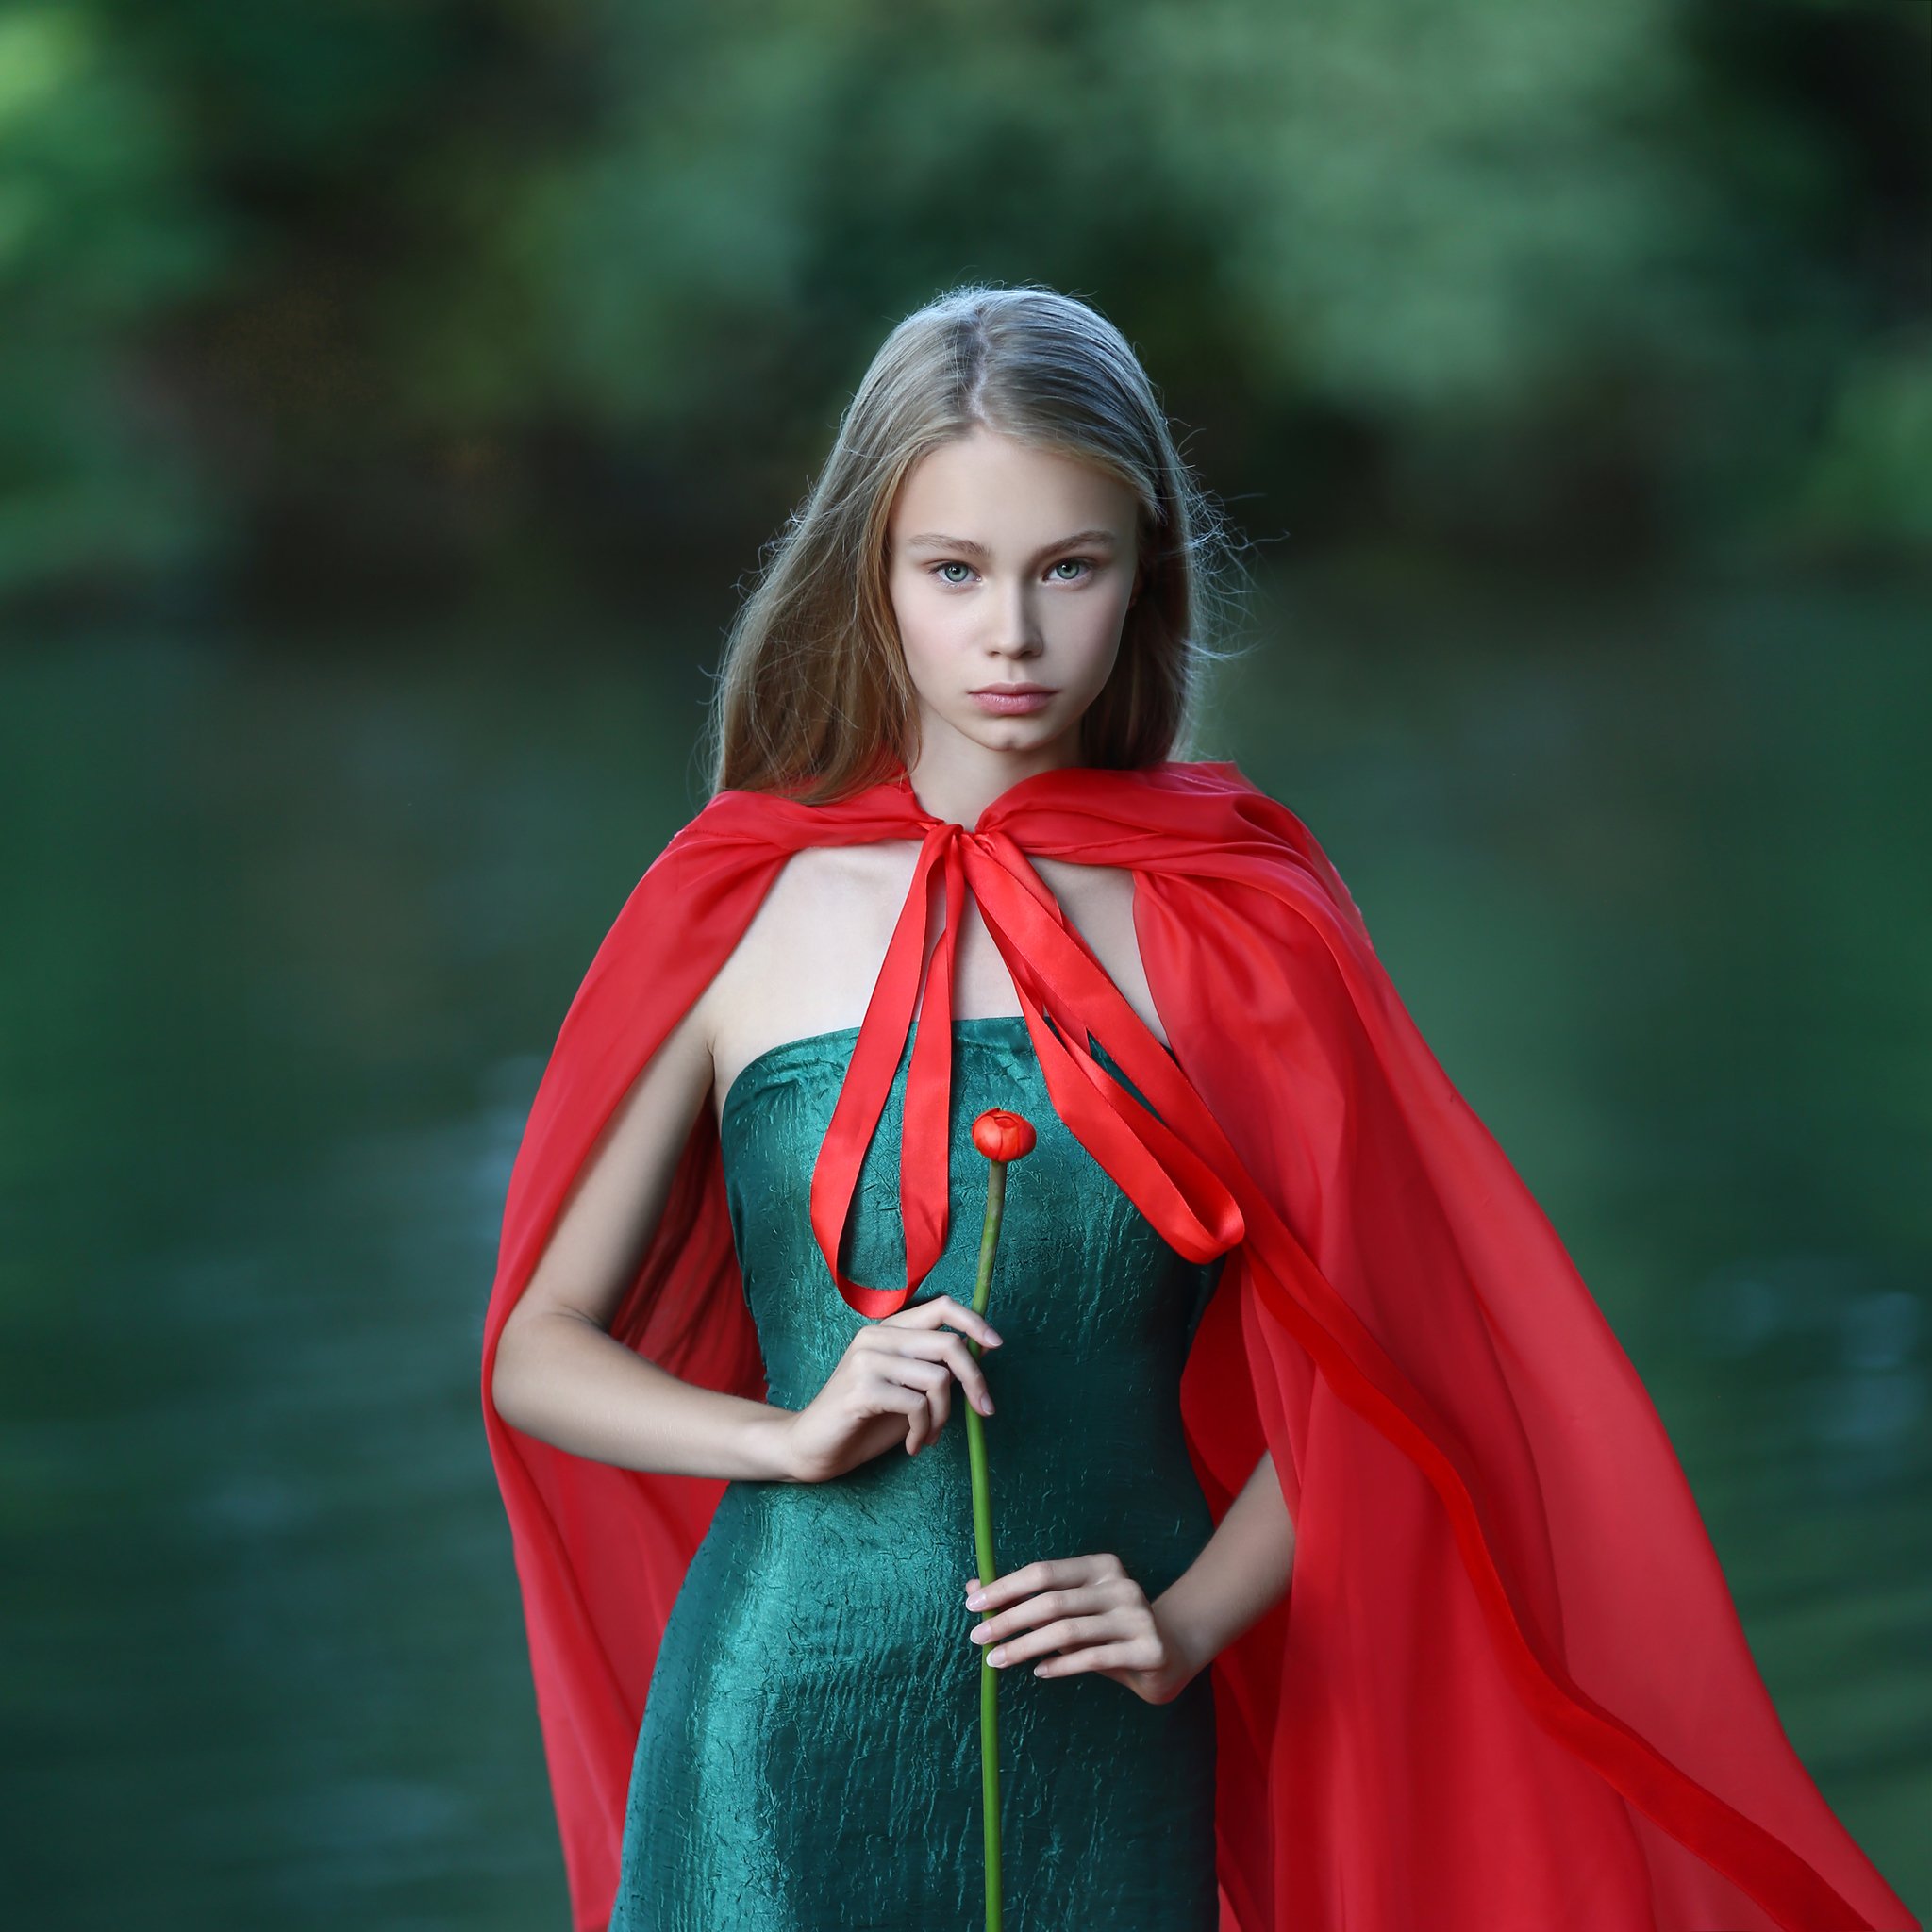 кувшинка, зеленое платье, красный плащ, девушка в красном плаще, девушка с кувшинкой, девушка на реке, Ирина Голубятникова